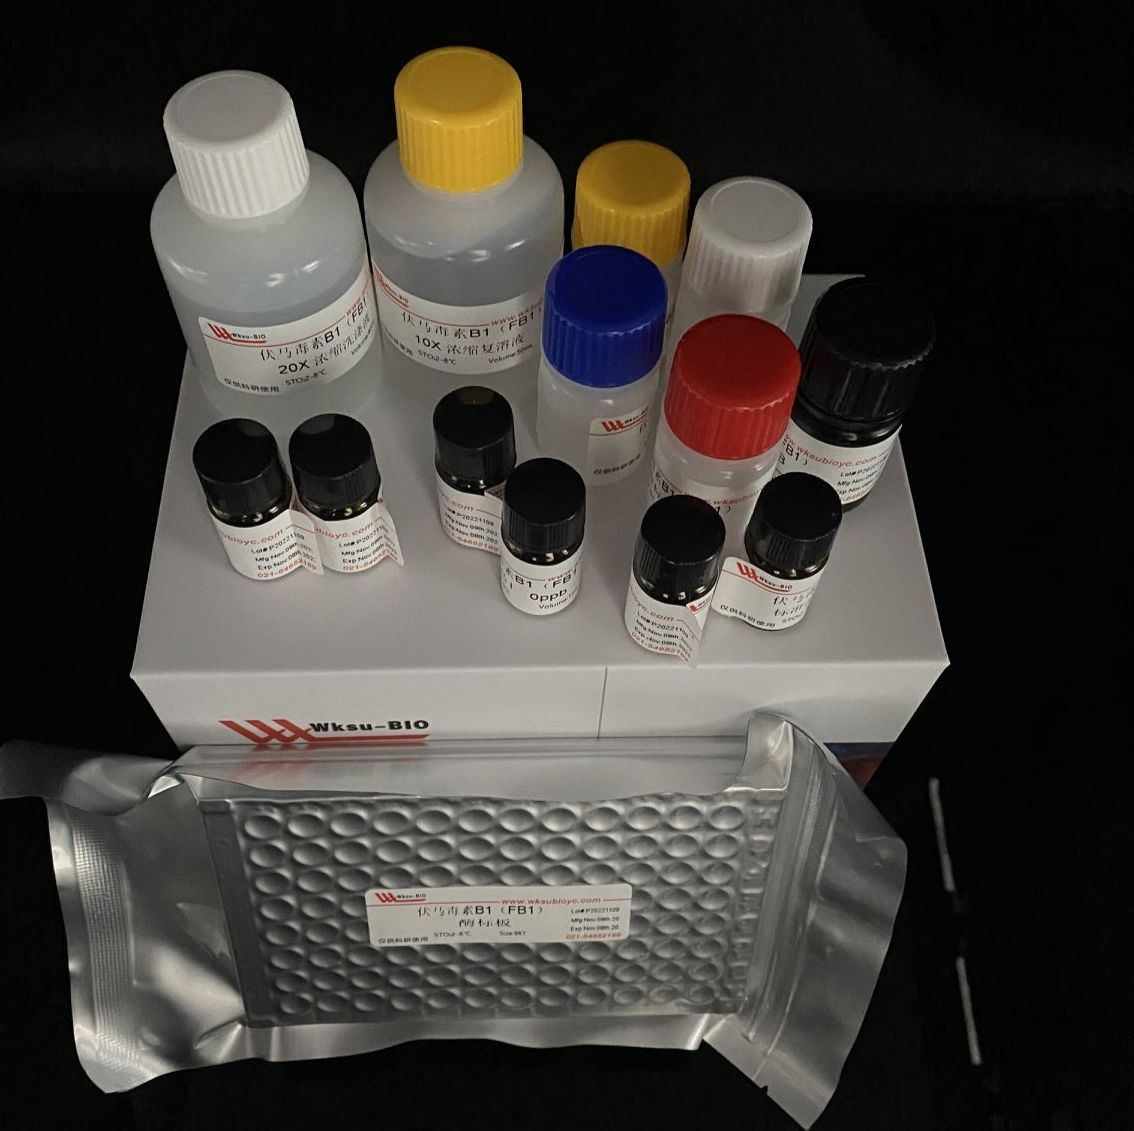 UDPG焦磷酸化酶/尿苷二磷酸葡萄糖焦磷酸化酶试剂盒,微板法